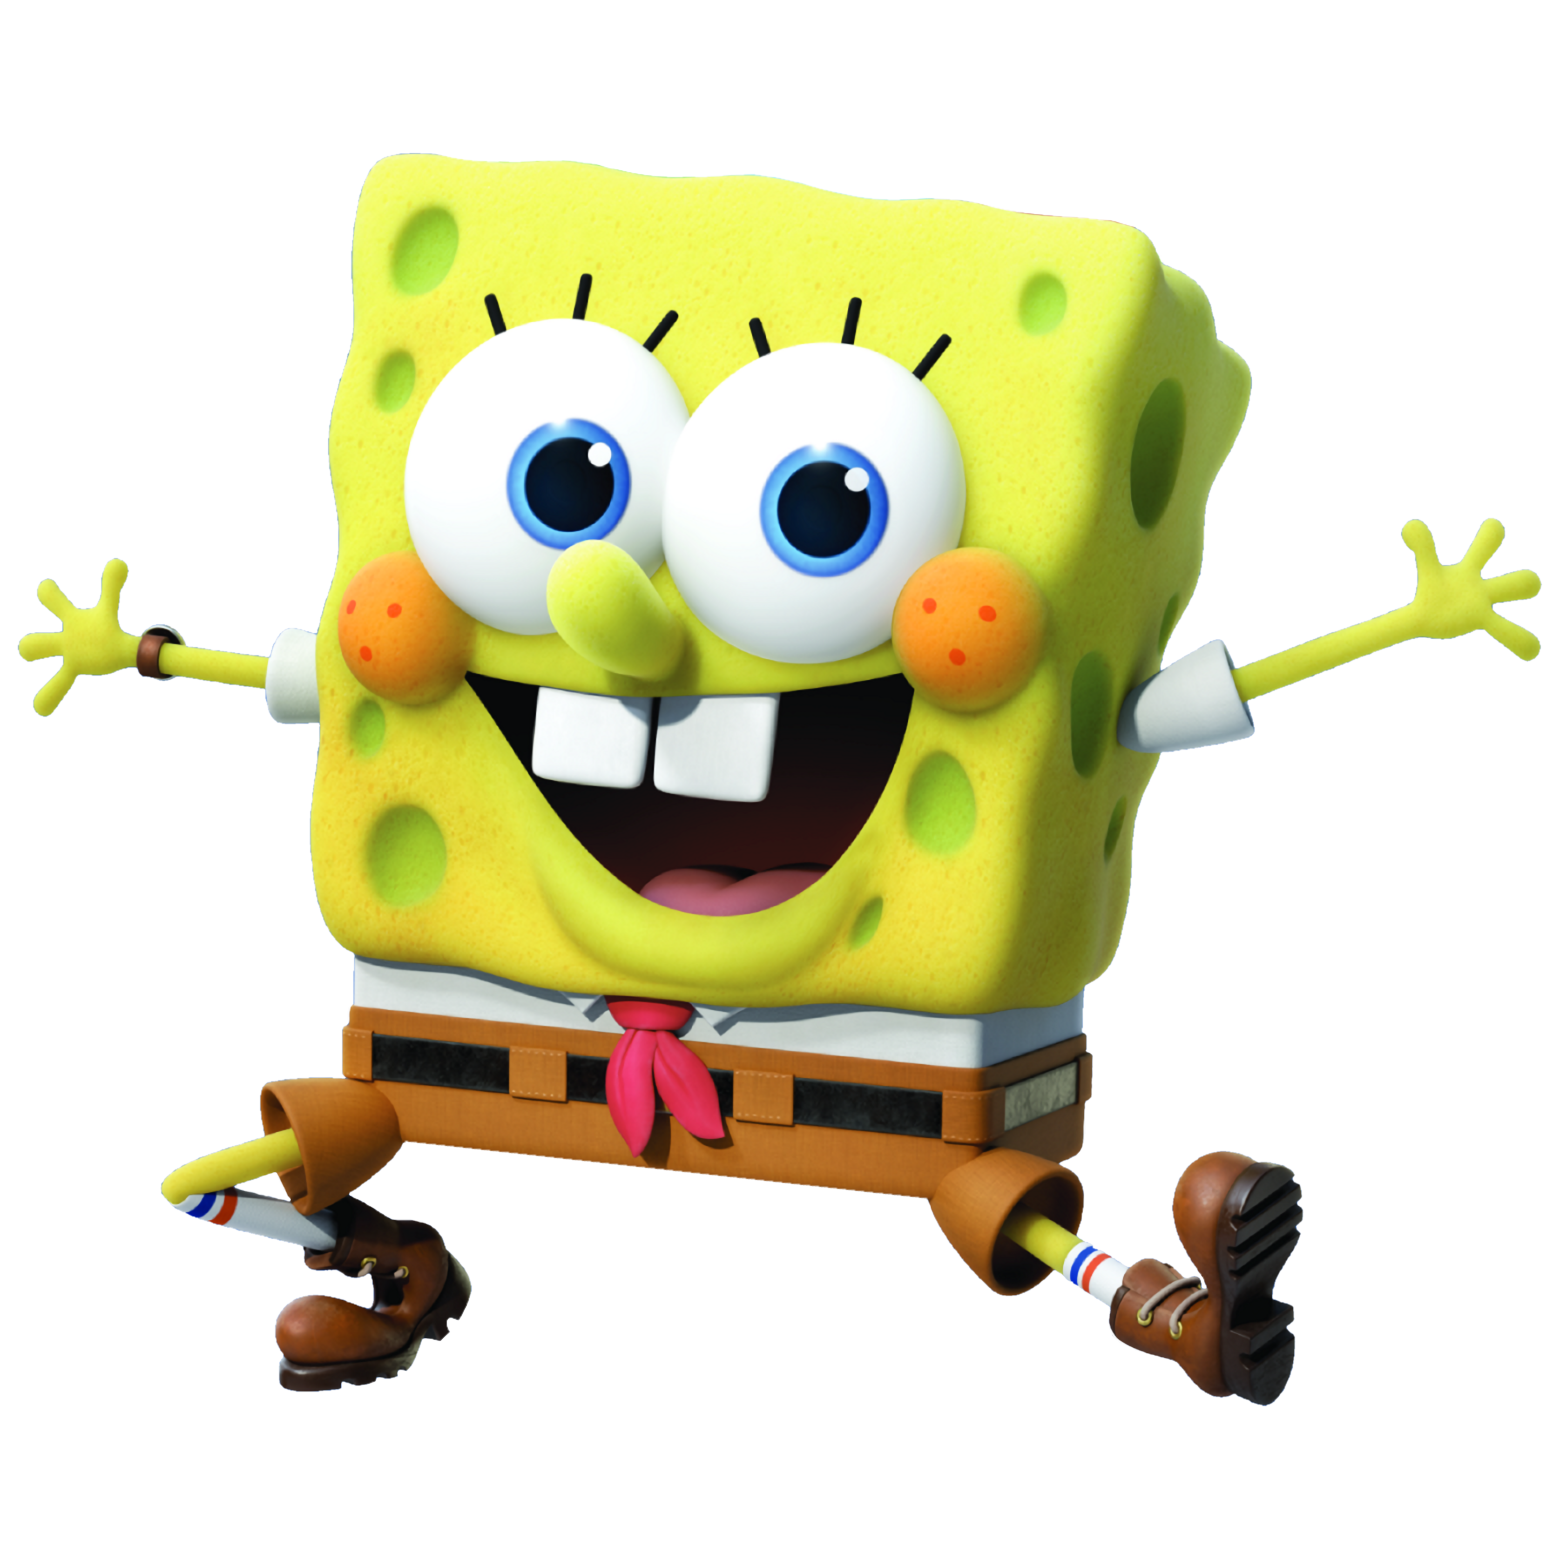 TEMA DE BOB ESPONJA PANTALONES CUADRADOS - Bob Esponja (Spongebob  Squarepants) 